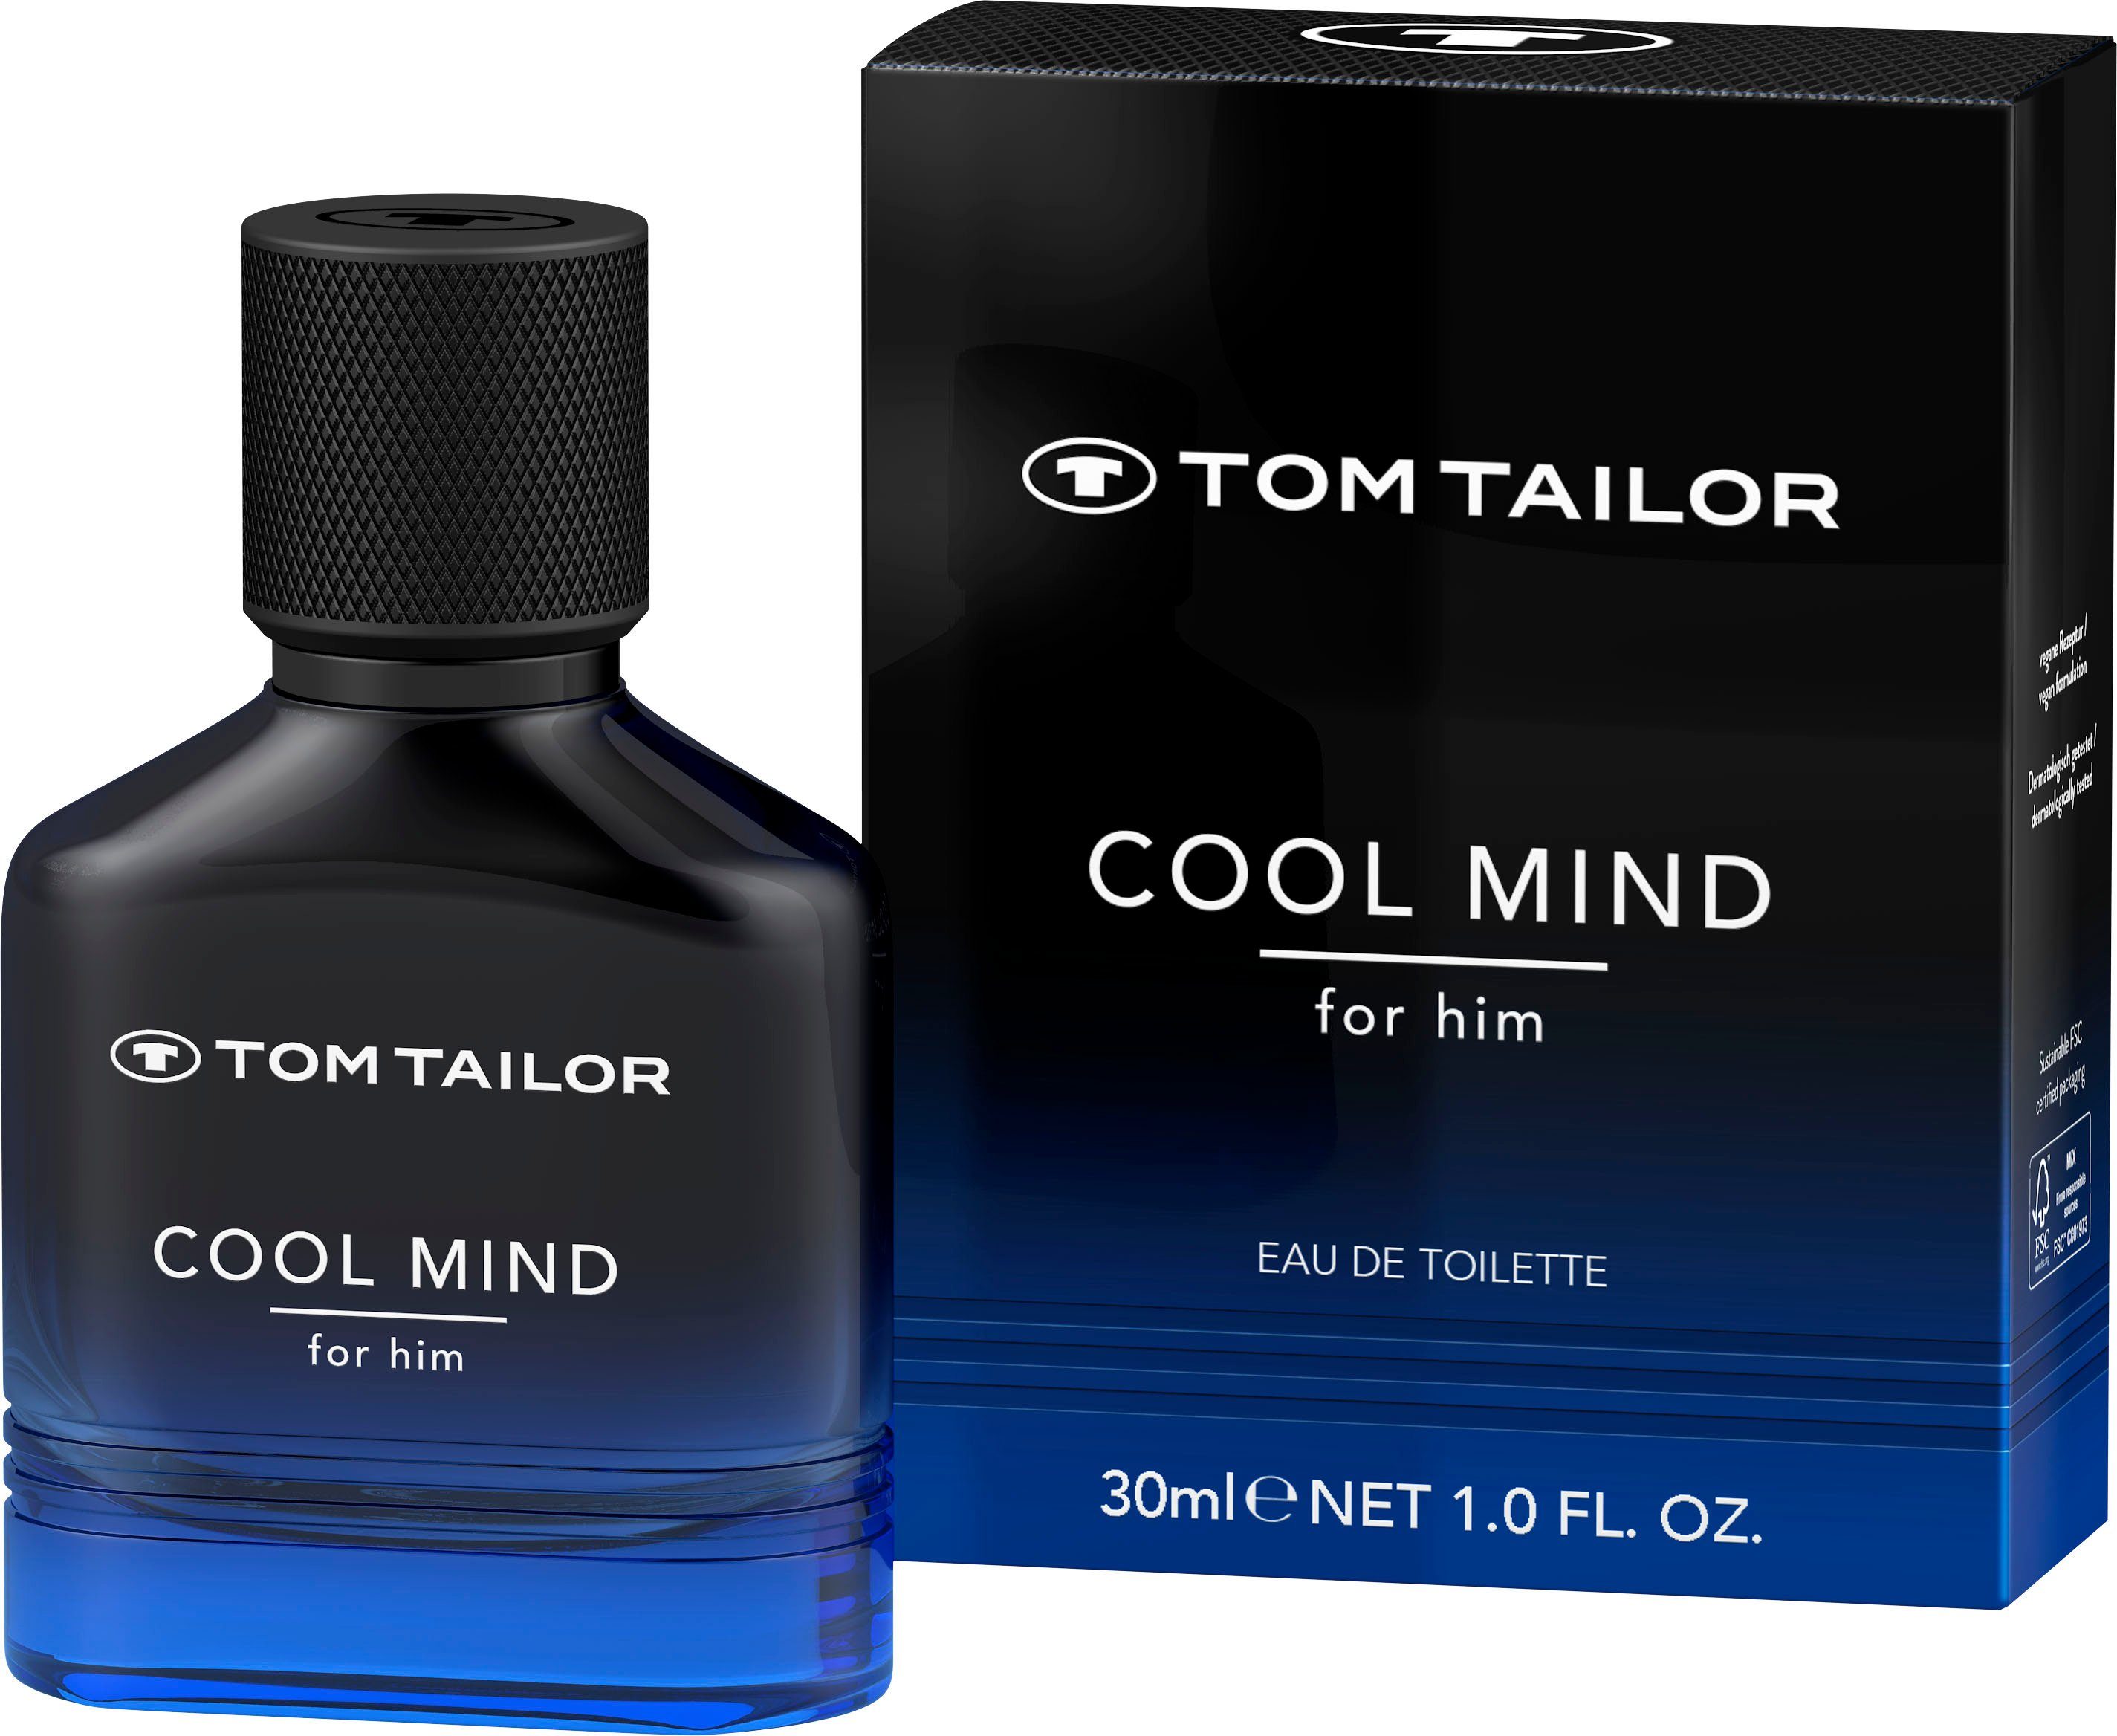 Männerduft, TOM COOL him for Parfum TAILOR MIND, EdT, Eau de Toilette